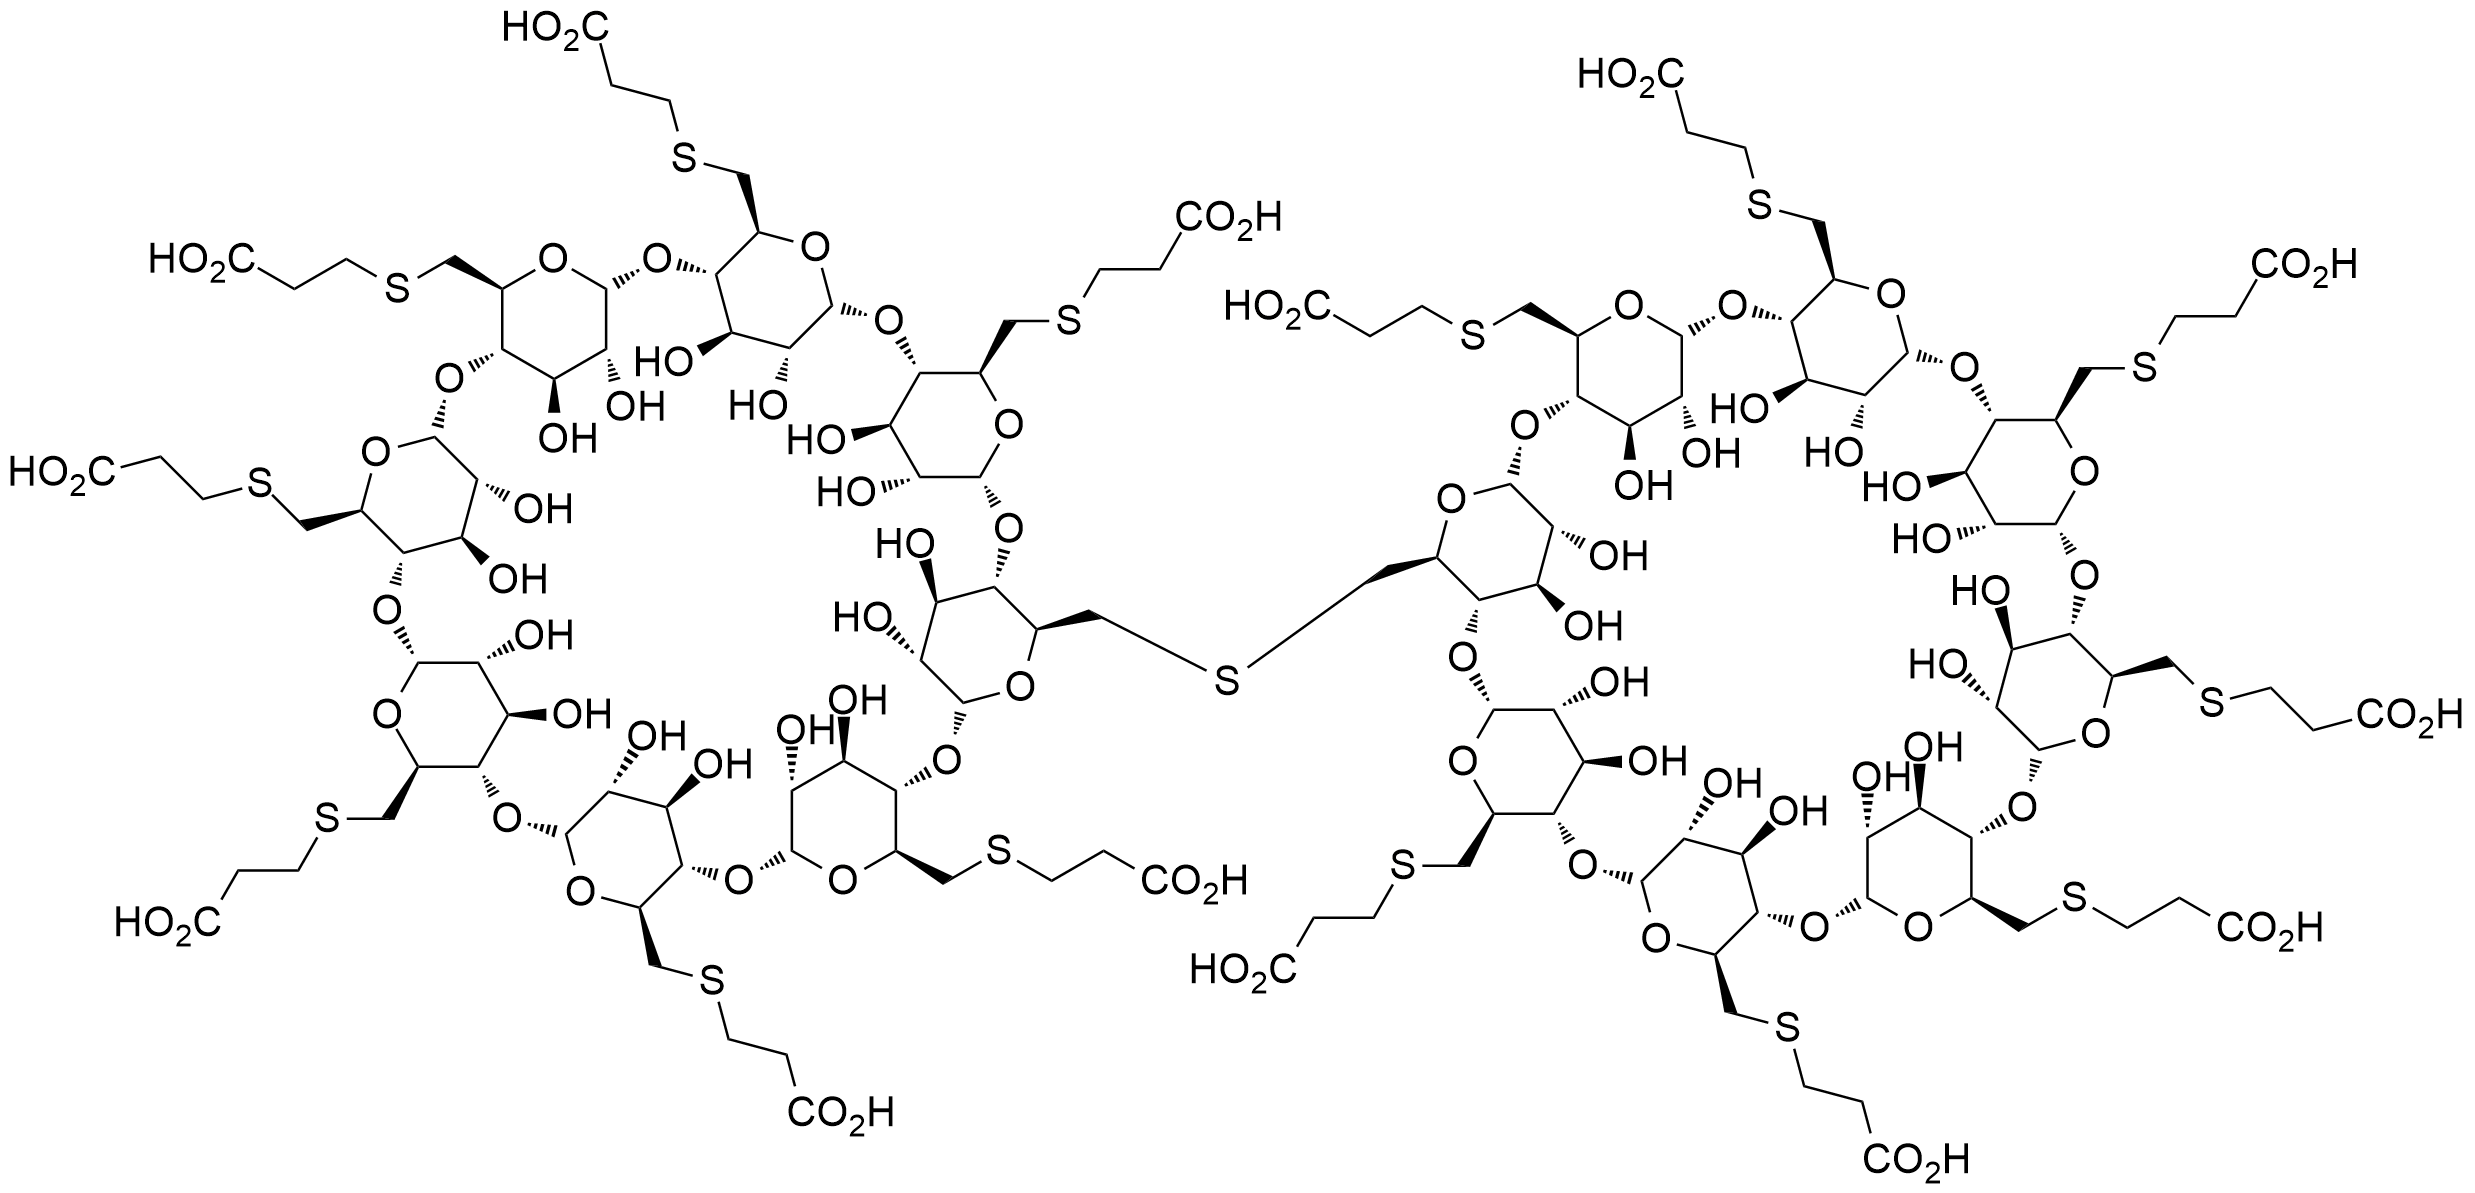 舒更葡糖钠Org199129-1杂质,Sugammadex sodium Org199129-1 Impurity